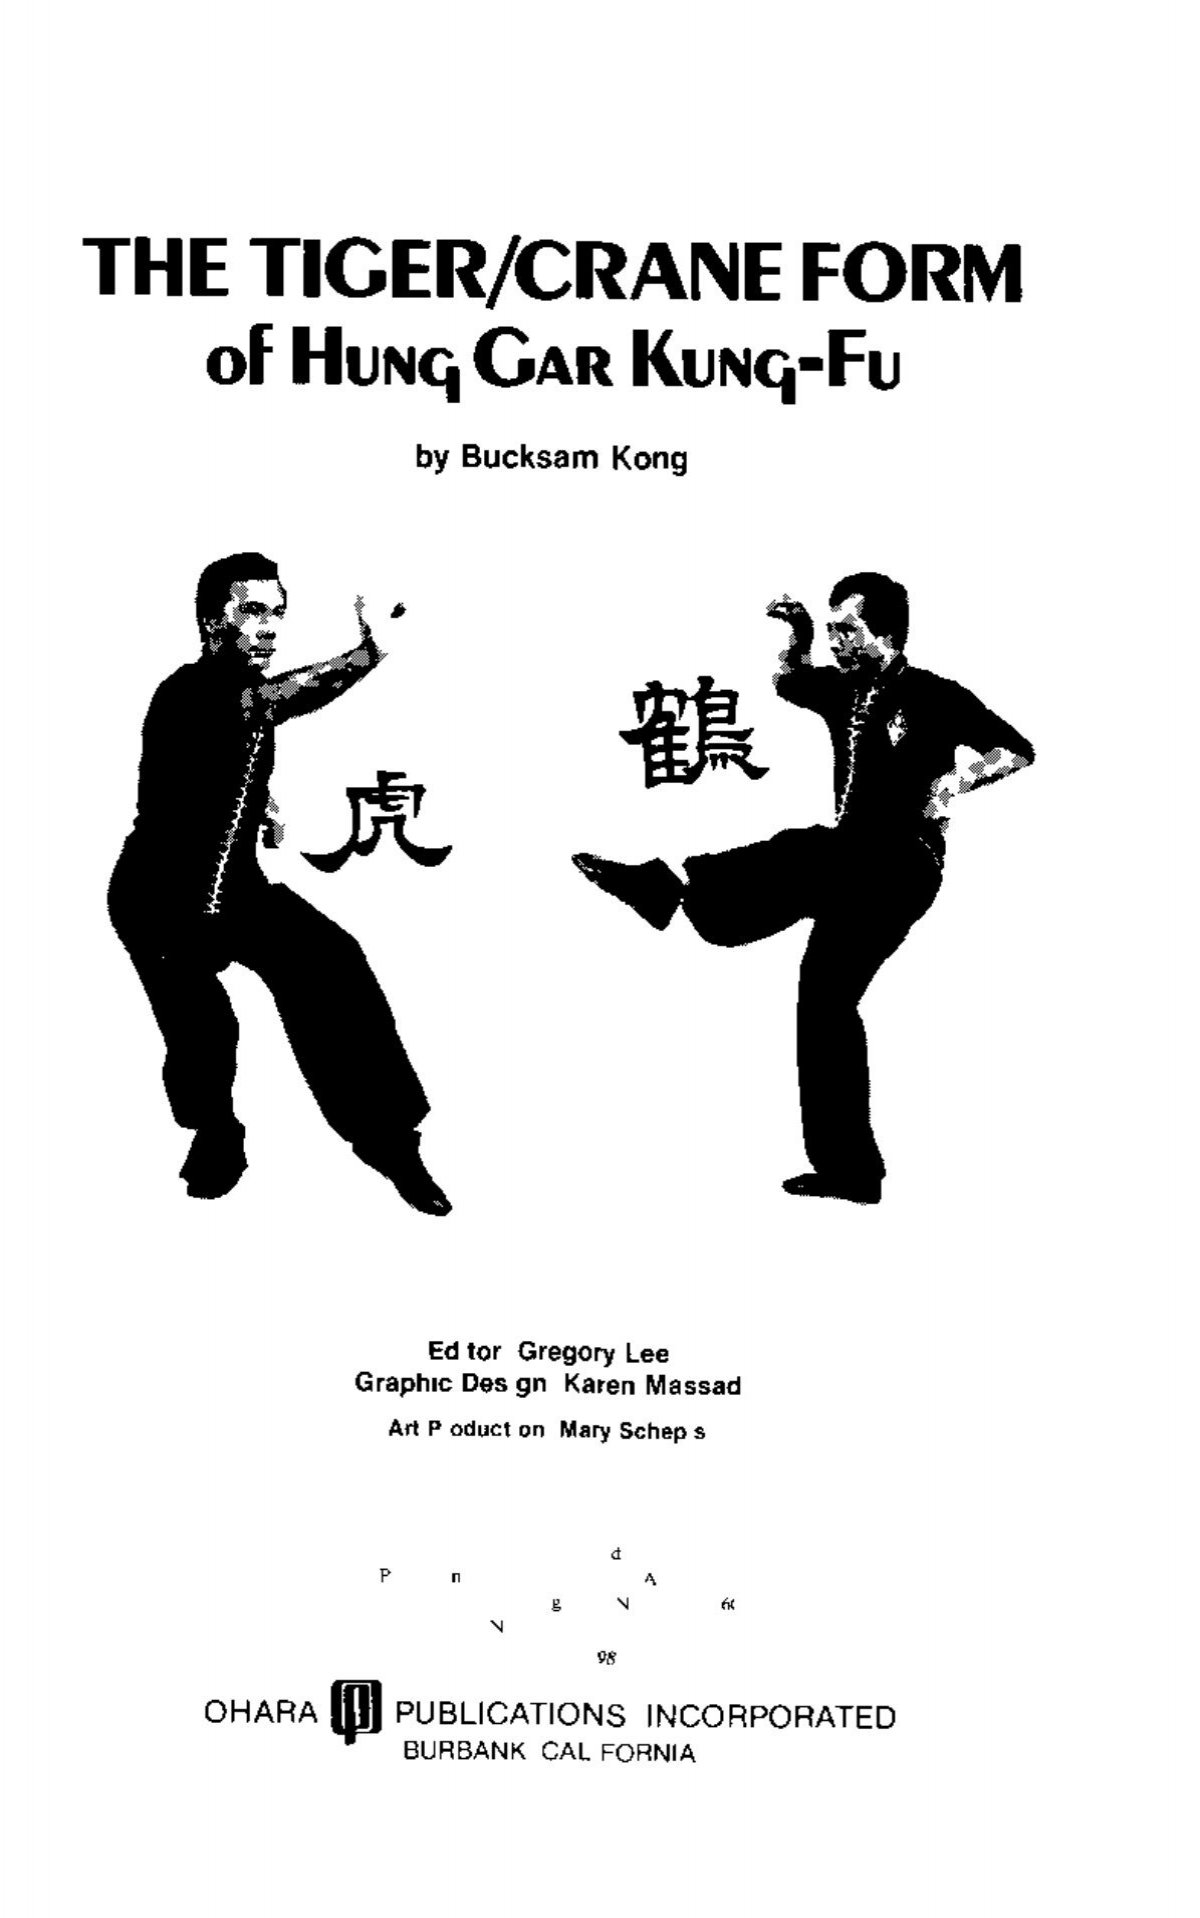 Bucksam Kong Hung Gar Kung Fu 2 Biblio Nhat Nam Ru